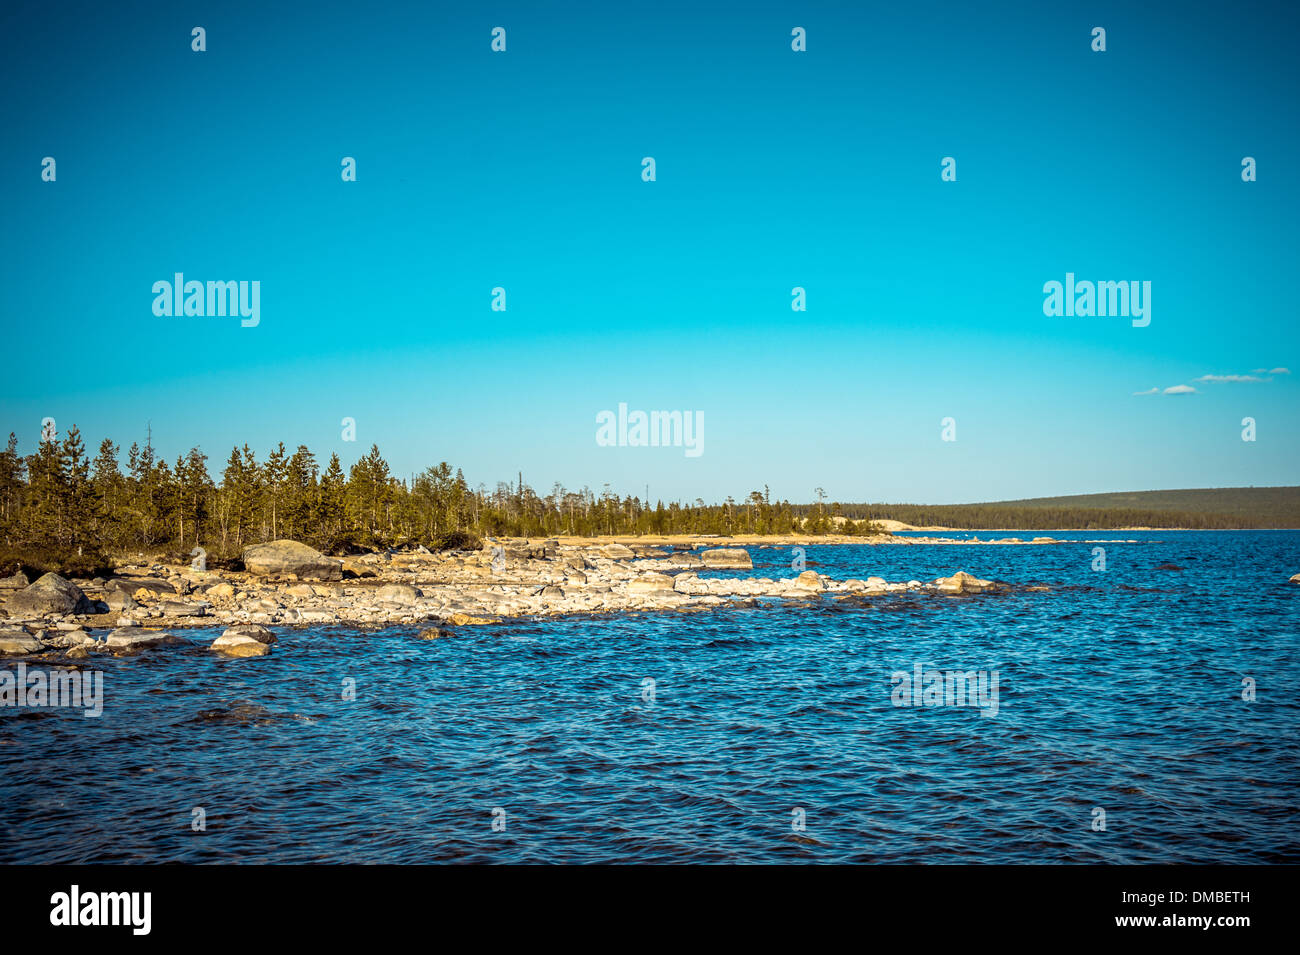 Imandra Lake and Tundra forest Northern Landscape Scandinavian nature Stock Photo